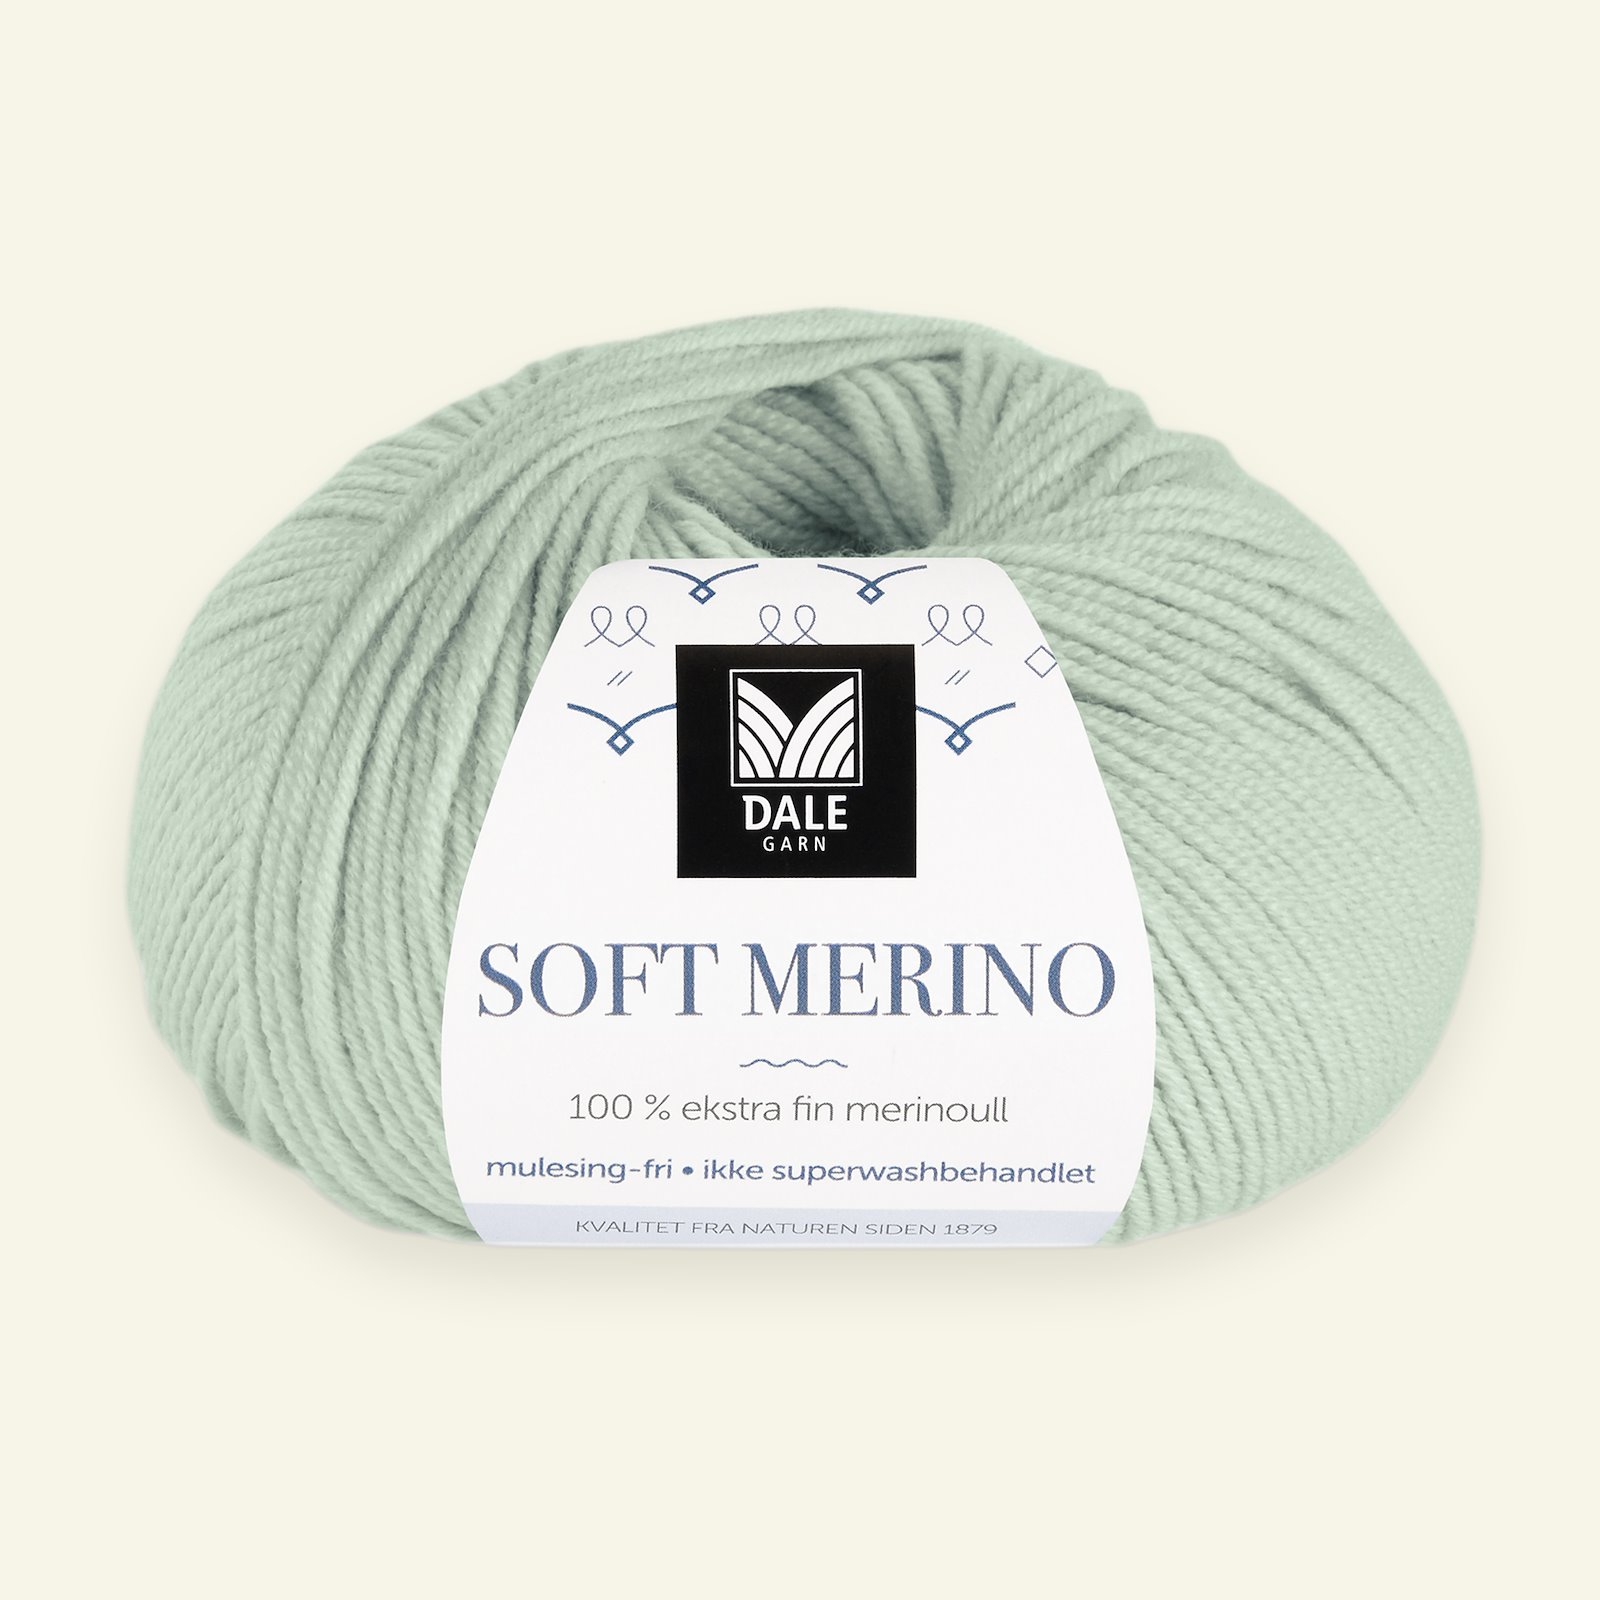 Dale Garn, 100% ekstra fint merinogarn "Soft Merino", Mintgrønn (3031) 90000352_pack